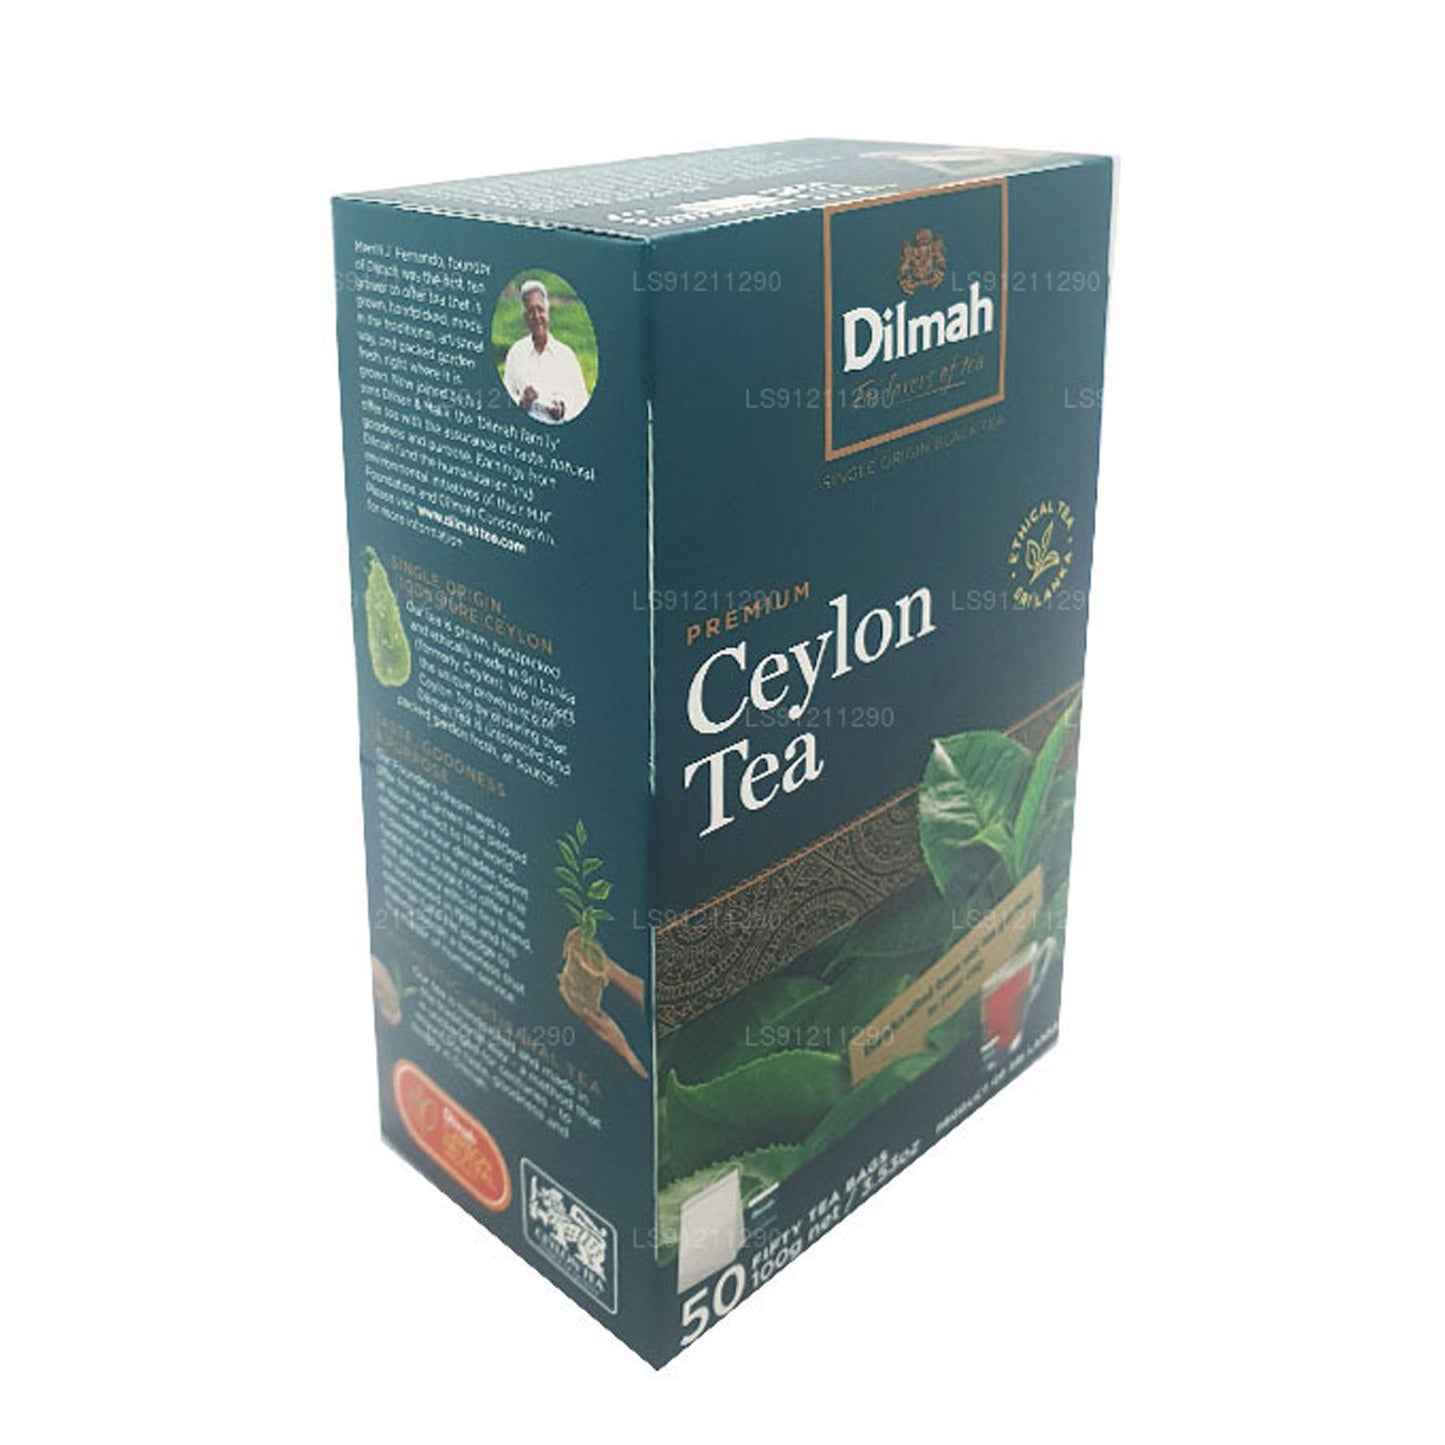 Dilmah Premium Ceylon Tea Bags